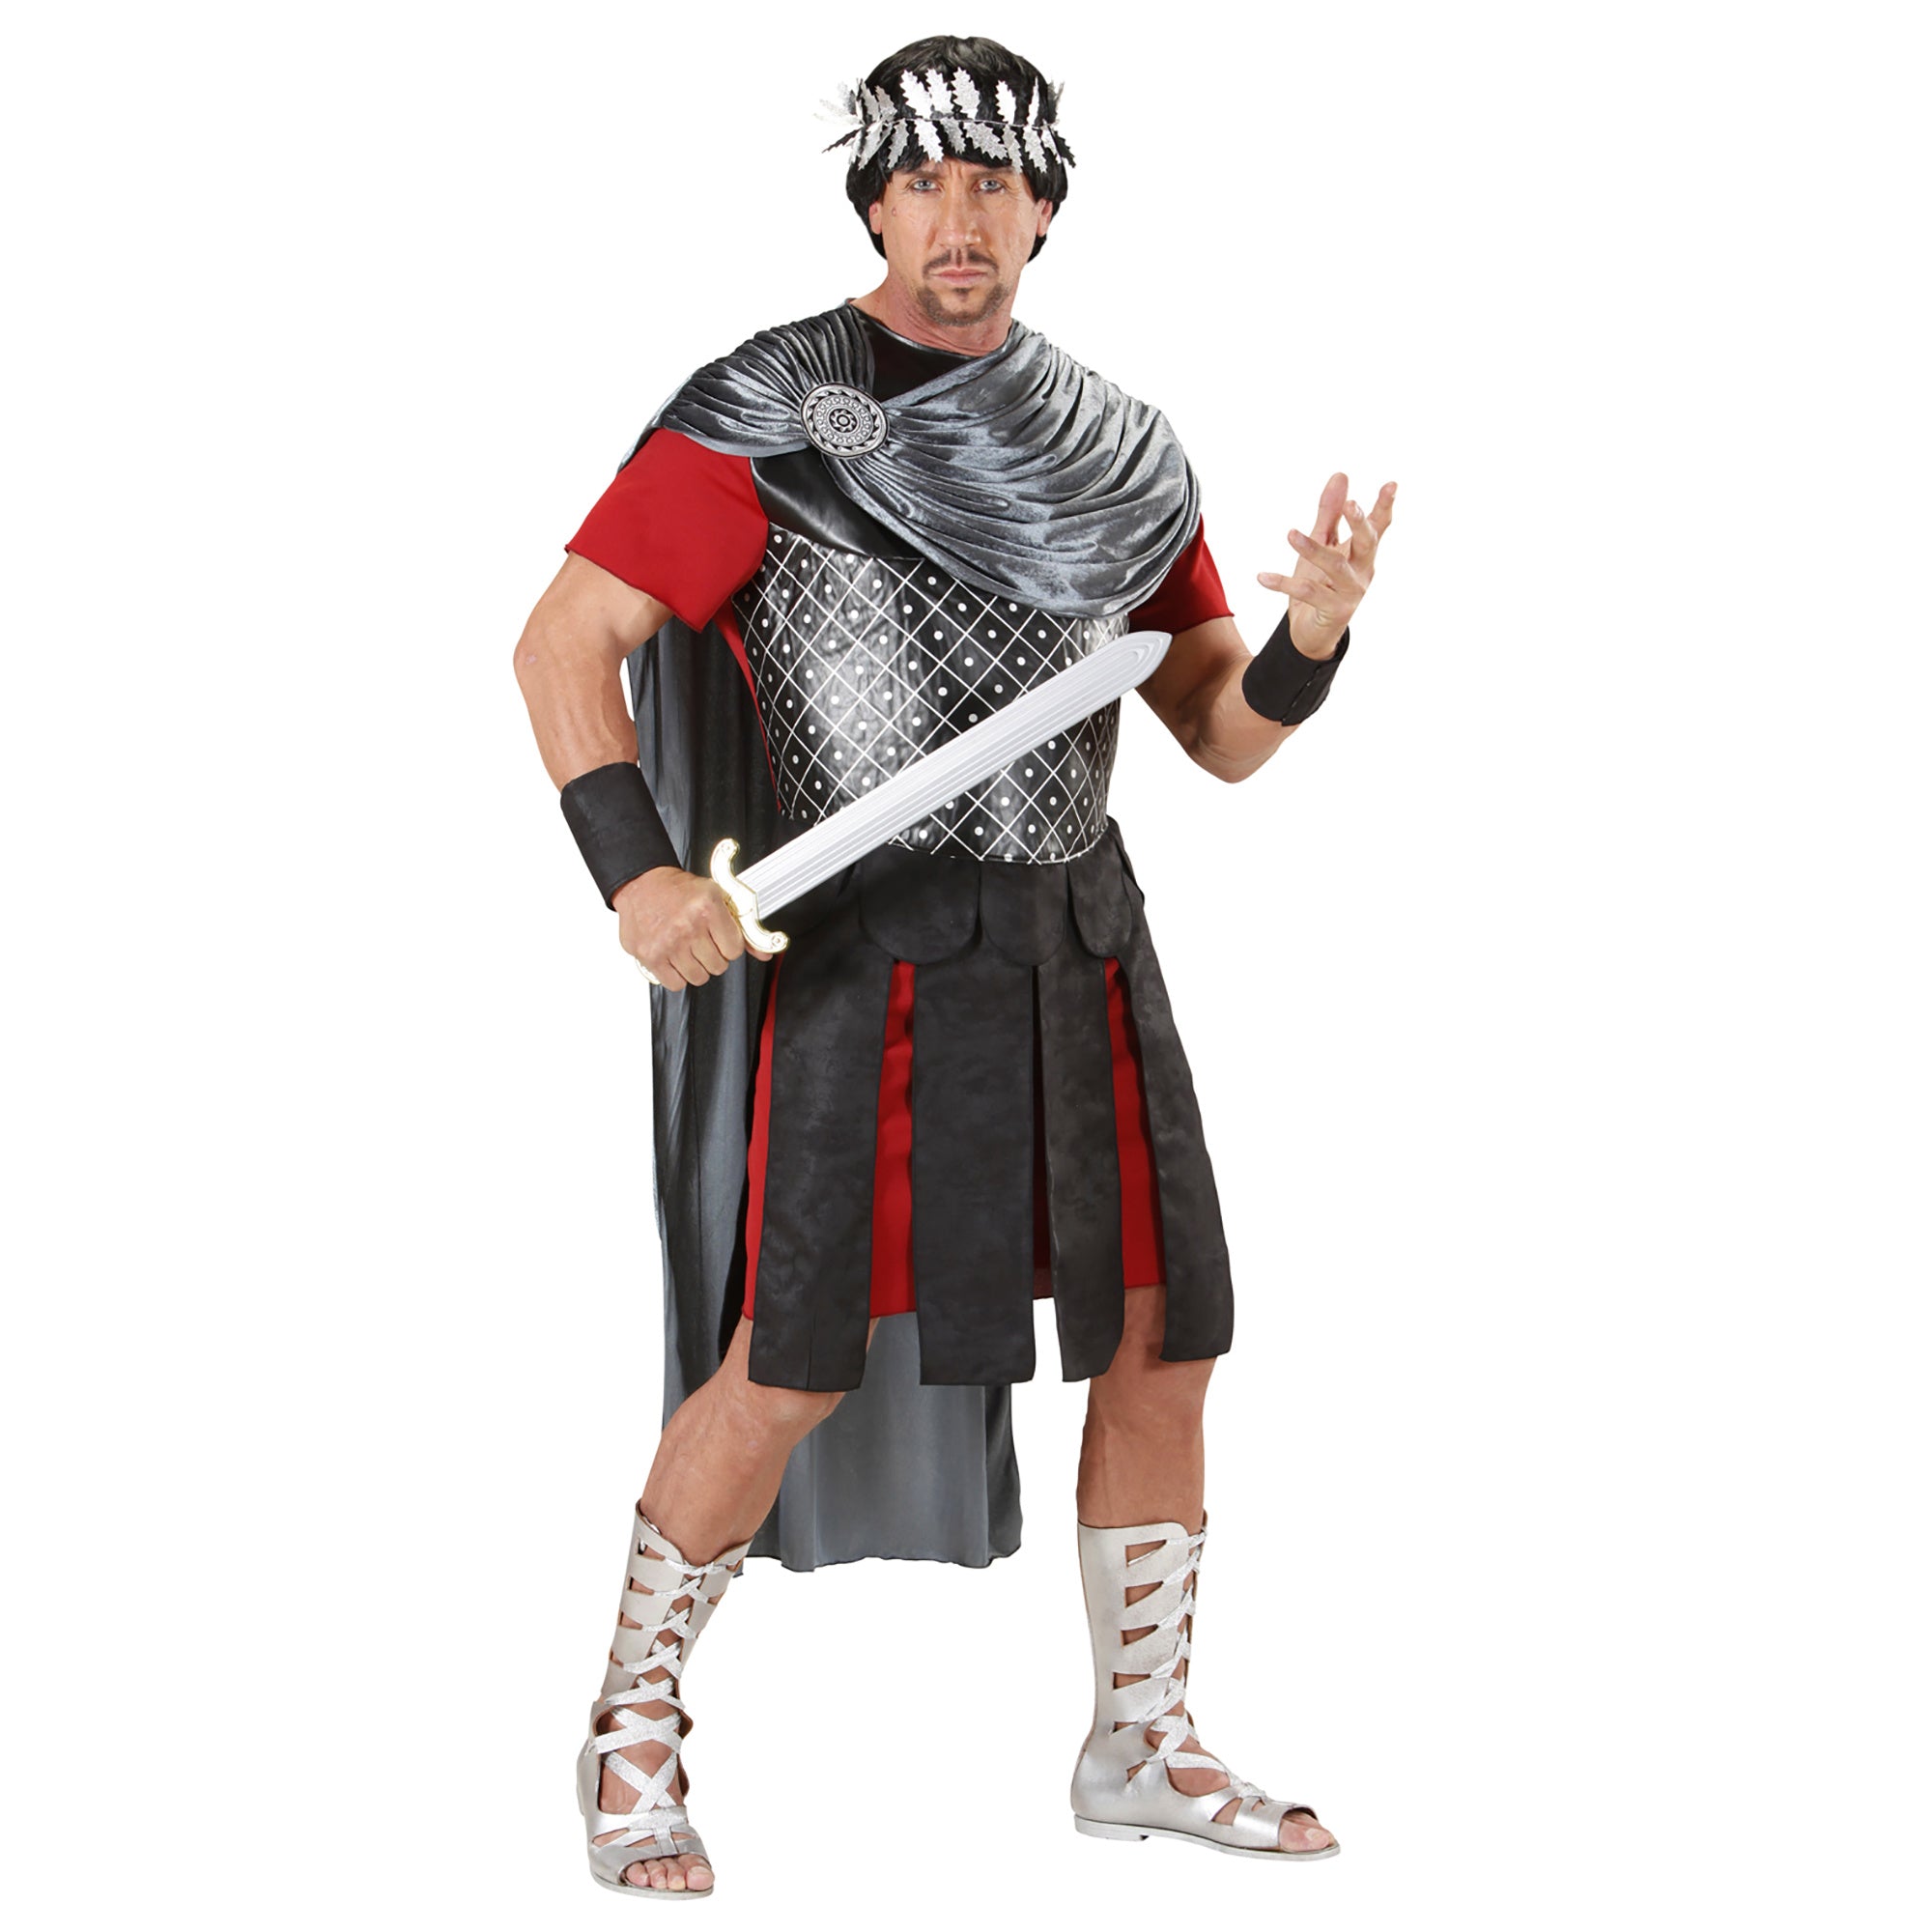 "Romeinse keizer kostuum voor heren - Verkleedkleding - XL"